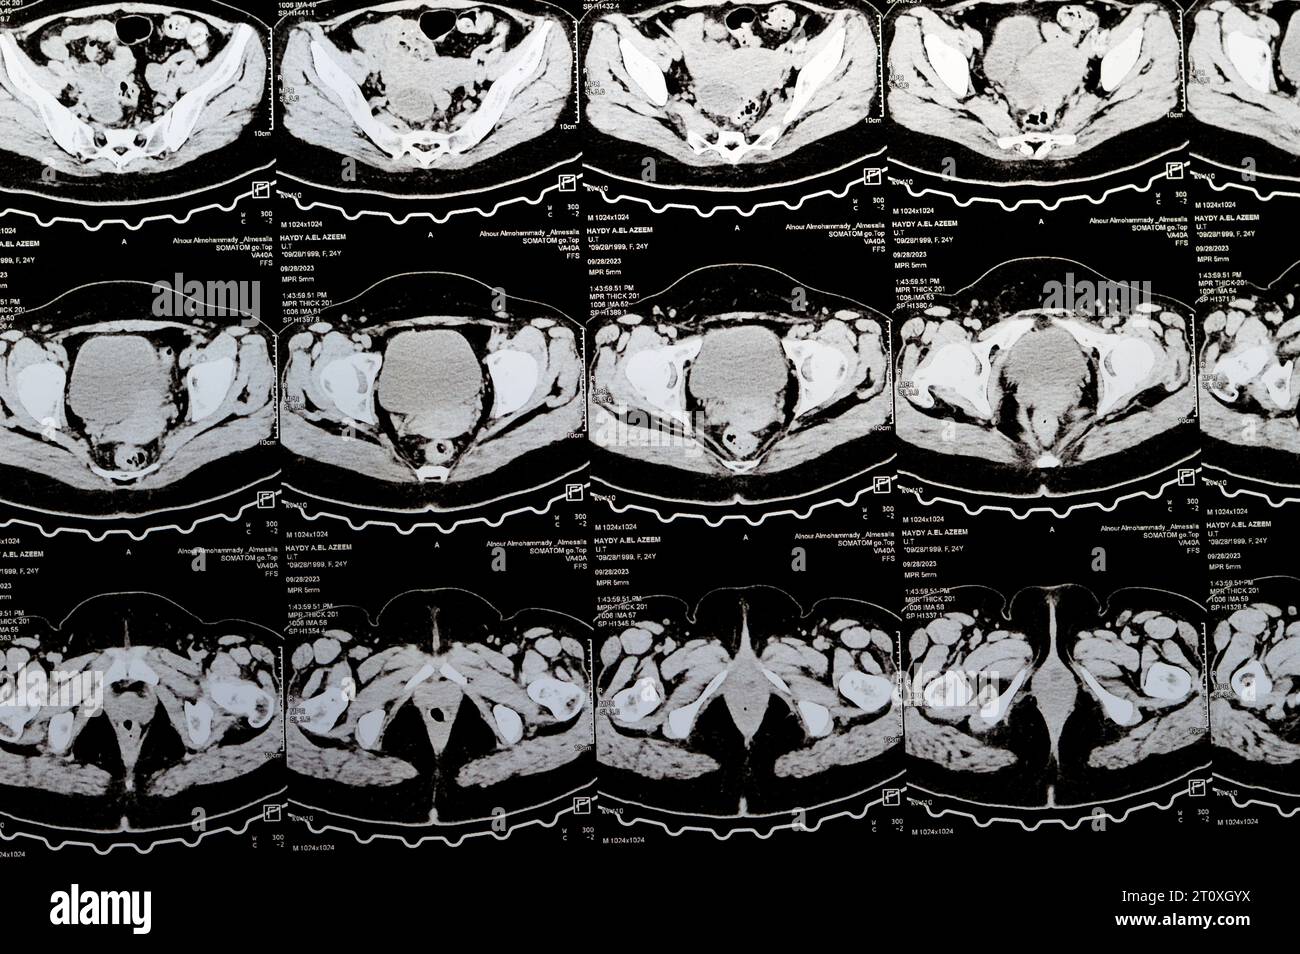 Kairo, Ägypten, 3. Oktober 2023: Mehrschicht-CT-Scan Abdomen und Becken zeigt rechte Ovarialzyste 3 x 3 cm, gasförmige Distension des Kolons, keine nennenswerte Harnmenge Stockfoto